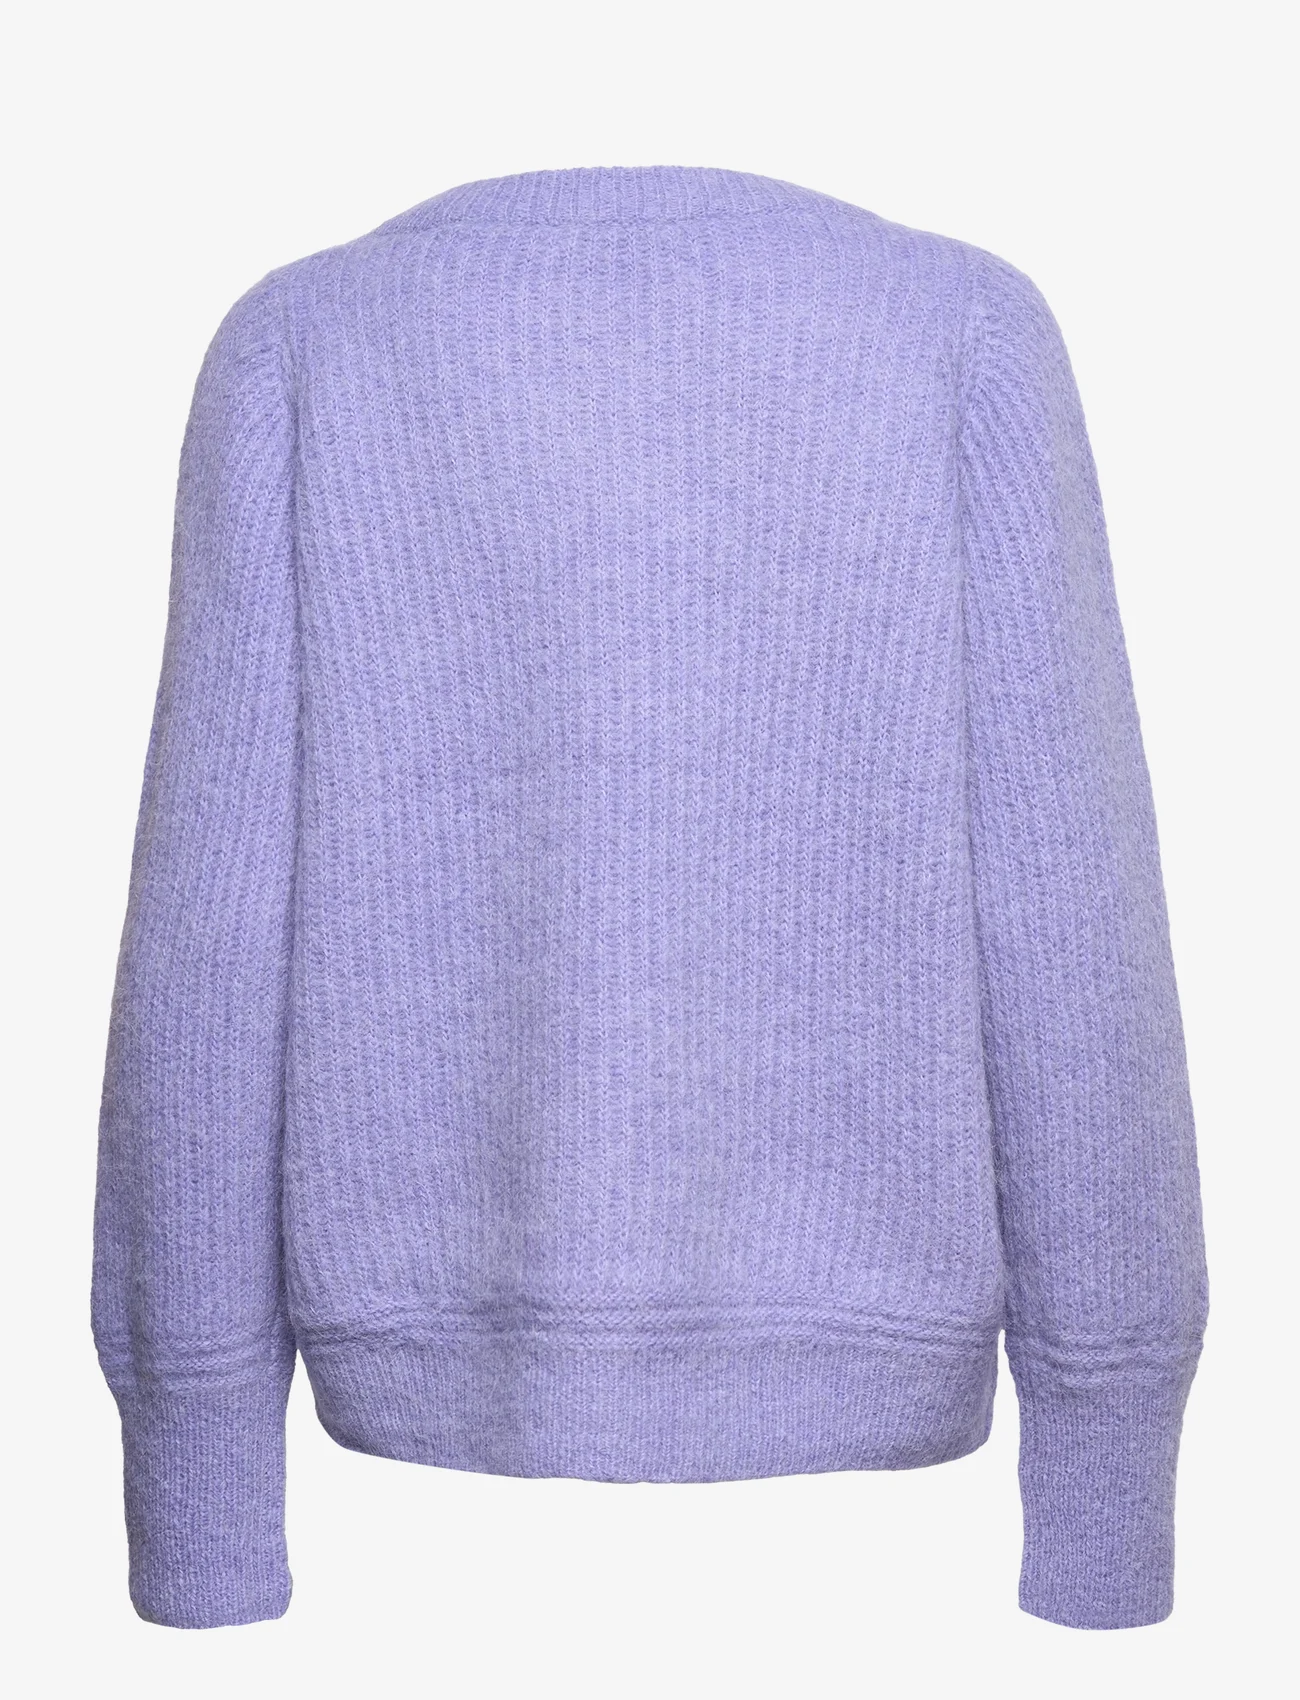 RODEBJER - Rodebjer Nyako - trøjer - violet blue - 1